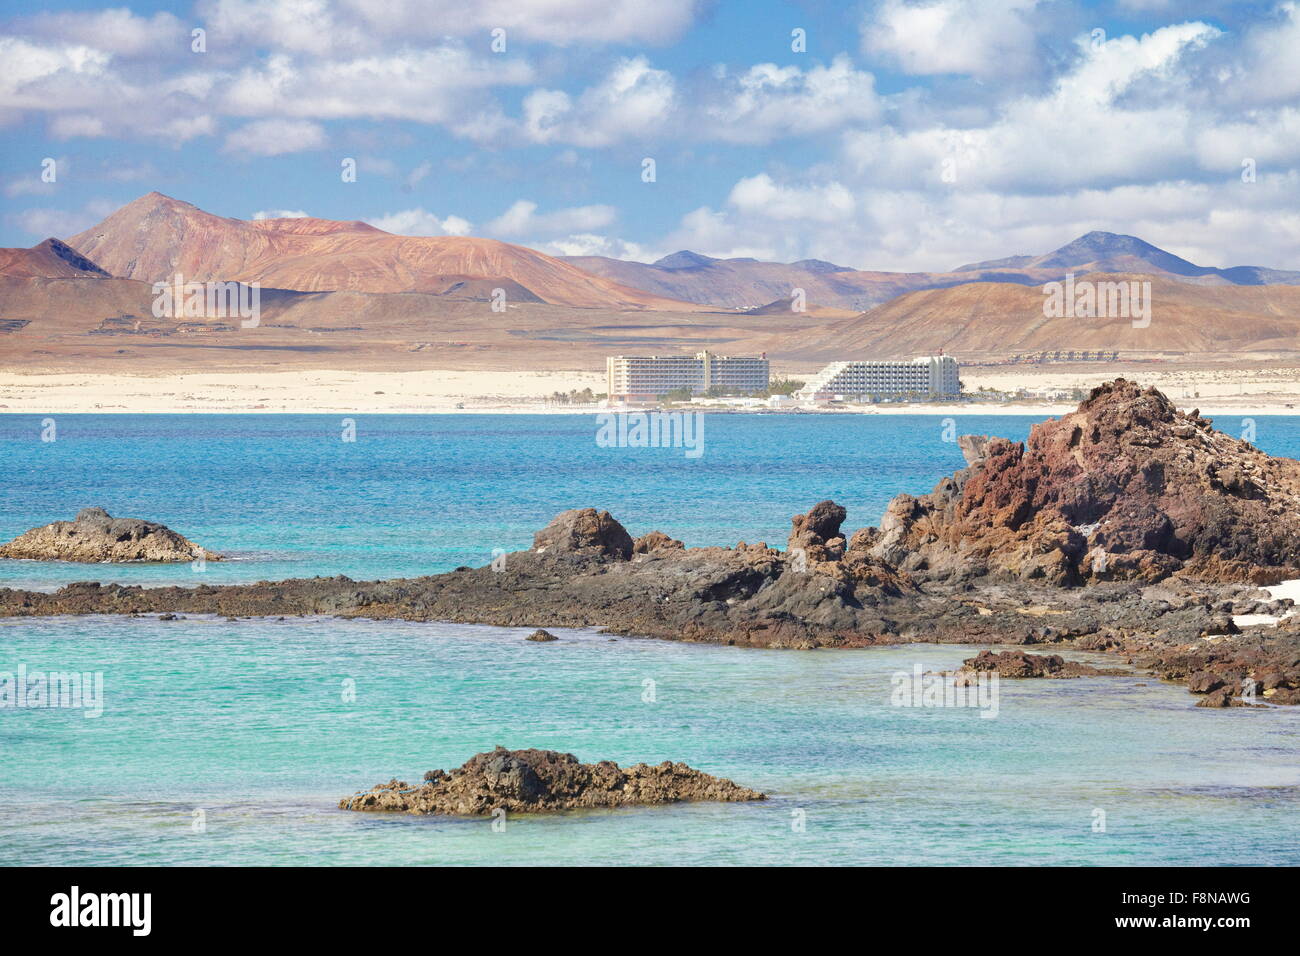 Vue depuis l'île de Lobos, l'île de Fuerteventura, Iles des Canaries Espagne Banque D'Images